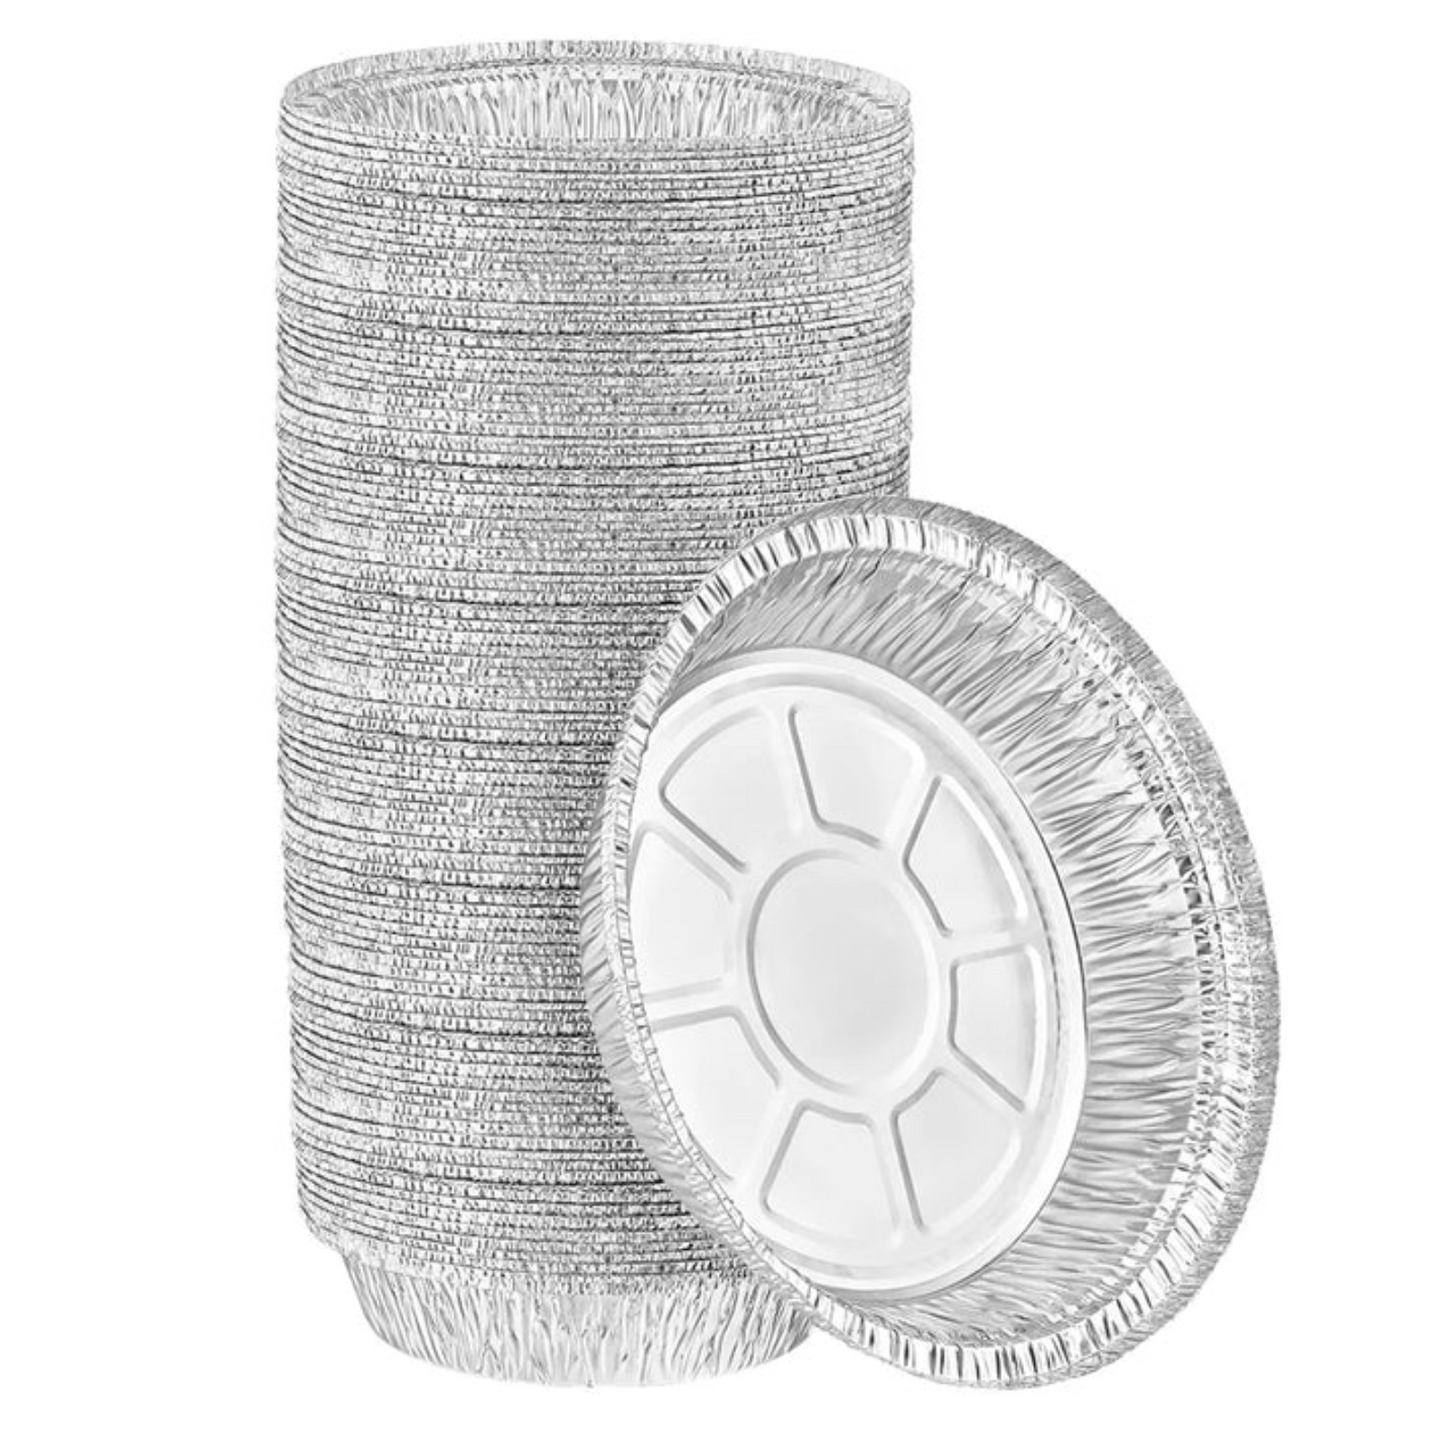 *WHOLESALE* Disposable 7” Aluminum Foil Round Pans | 500 ct/case Disposable JetFoil   